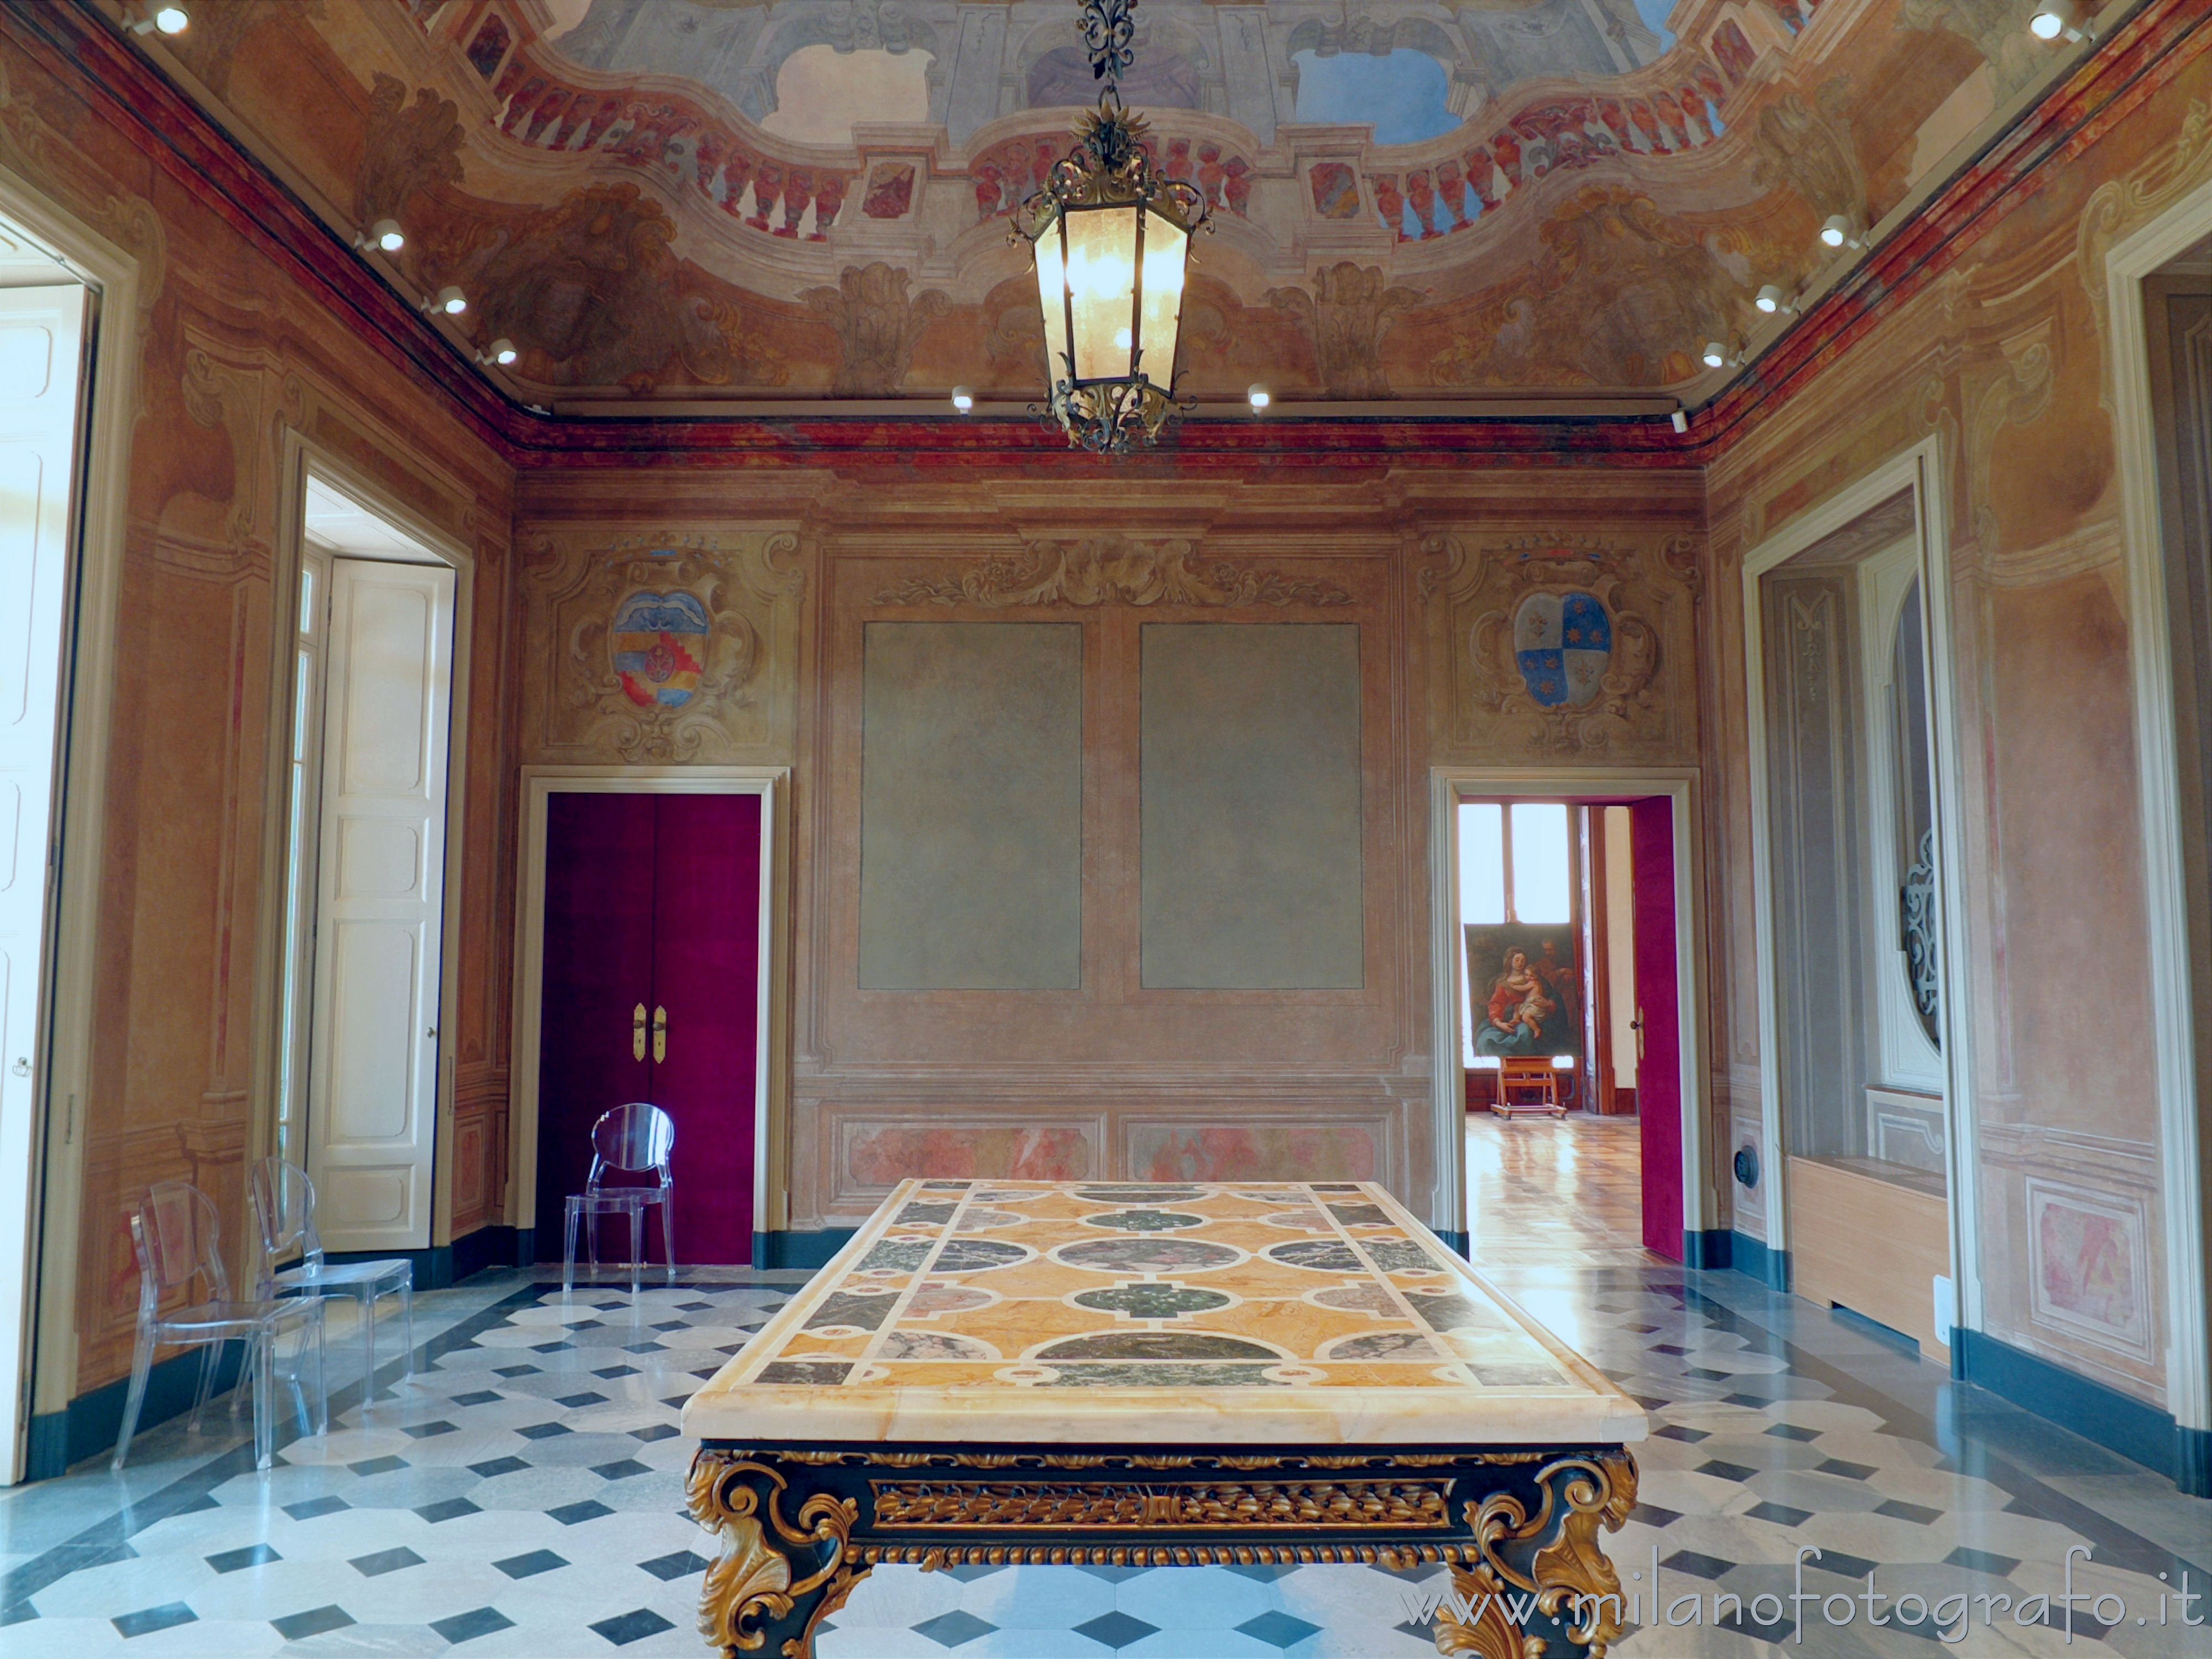 Arcore (Monza e Brianza, Italy): Trompe-l’œil hall of Villa Borromeo d'Adda - Arcore (Monza e Brianza, Italy)